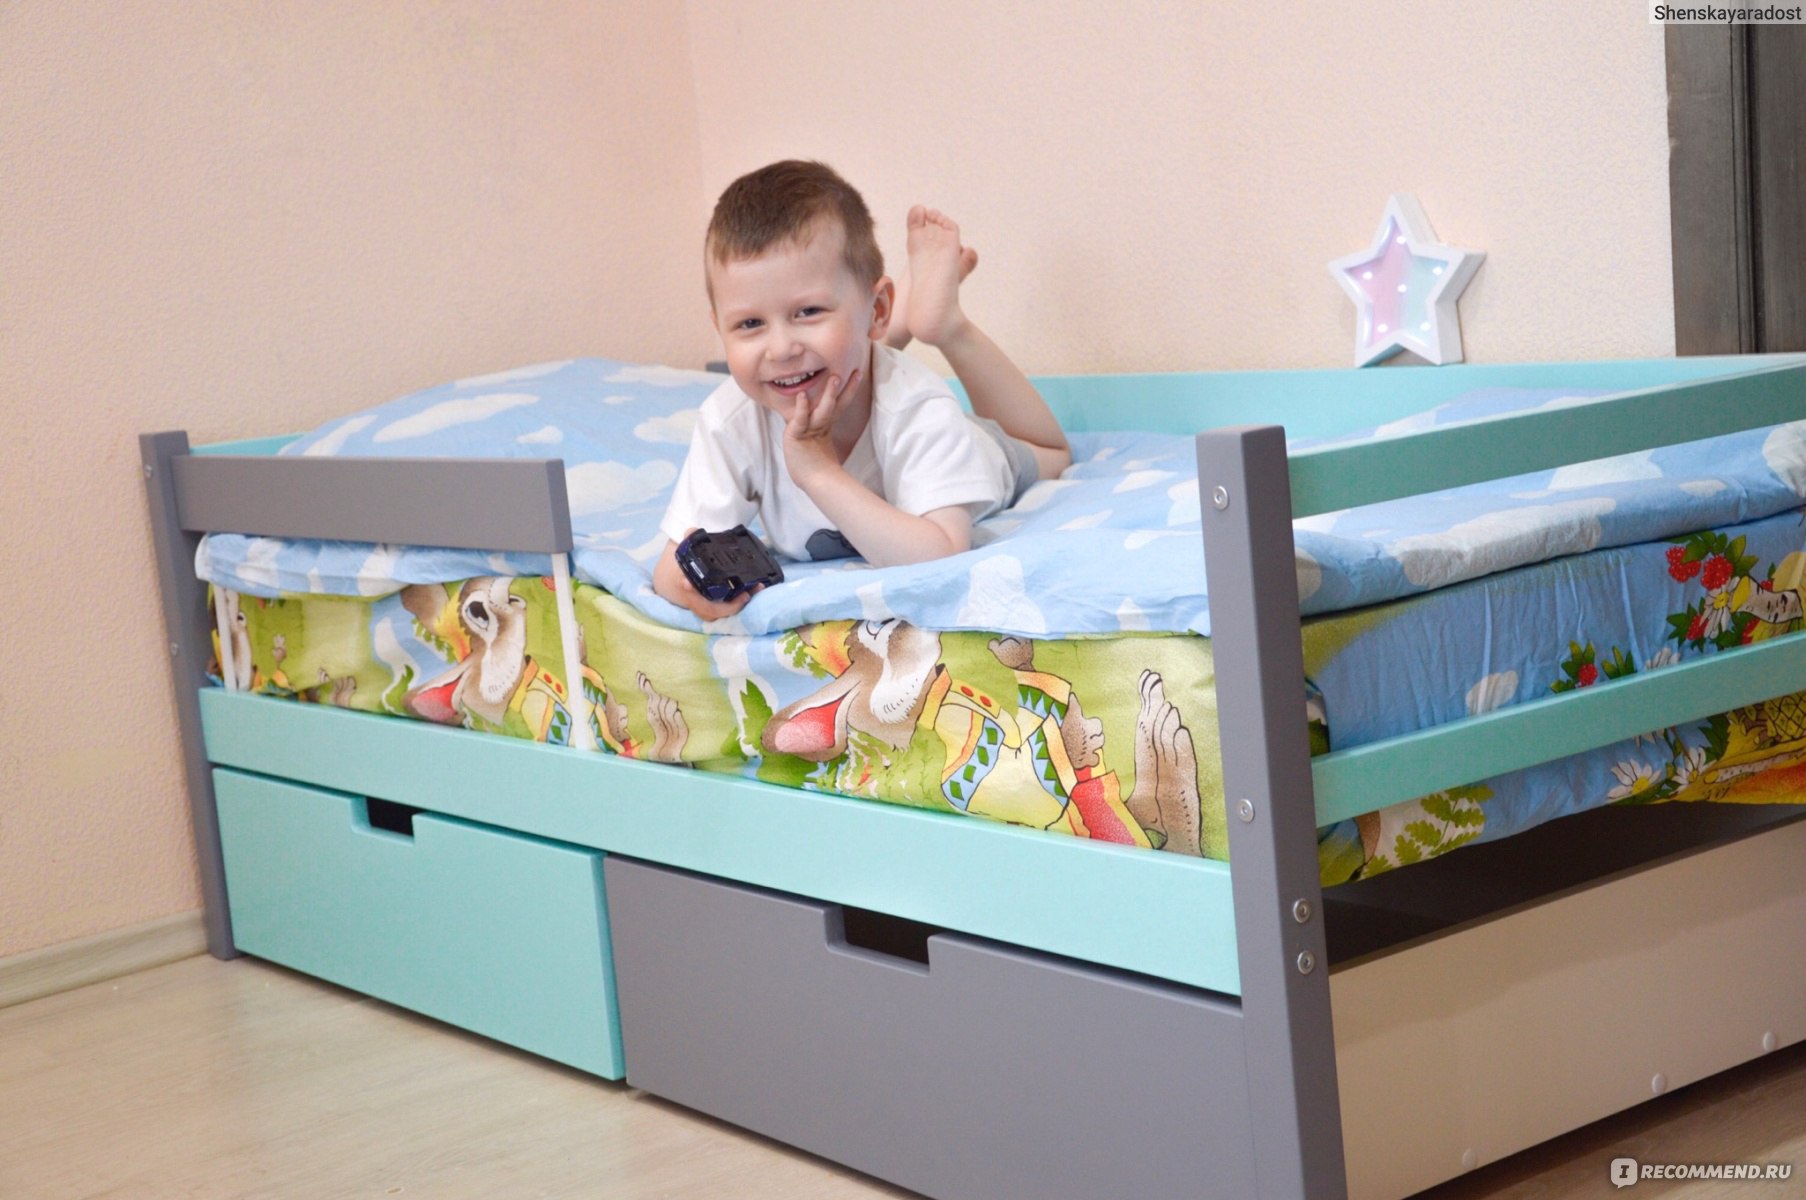 Размер кровати для 5 летнего ребенка